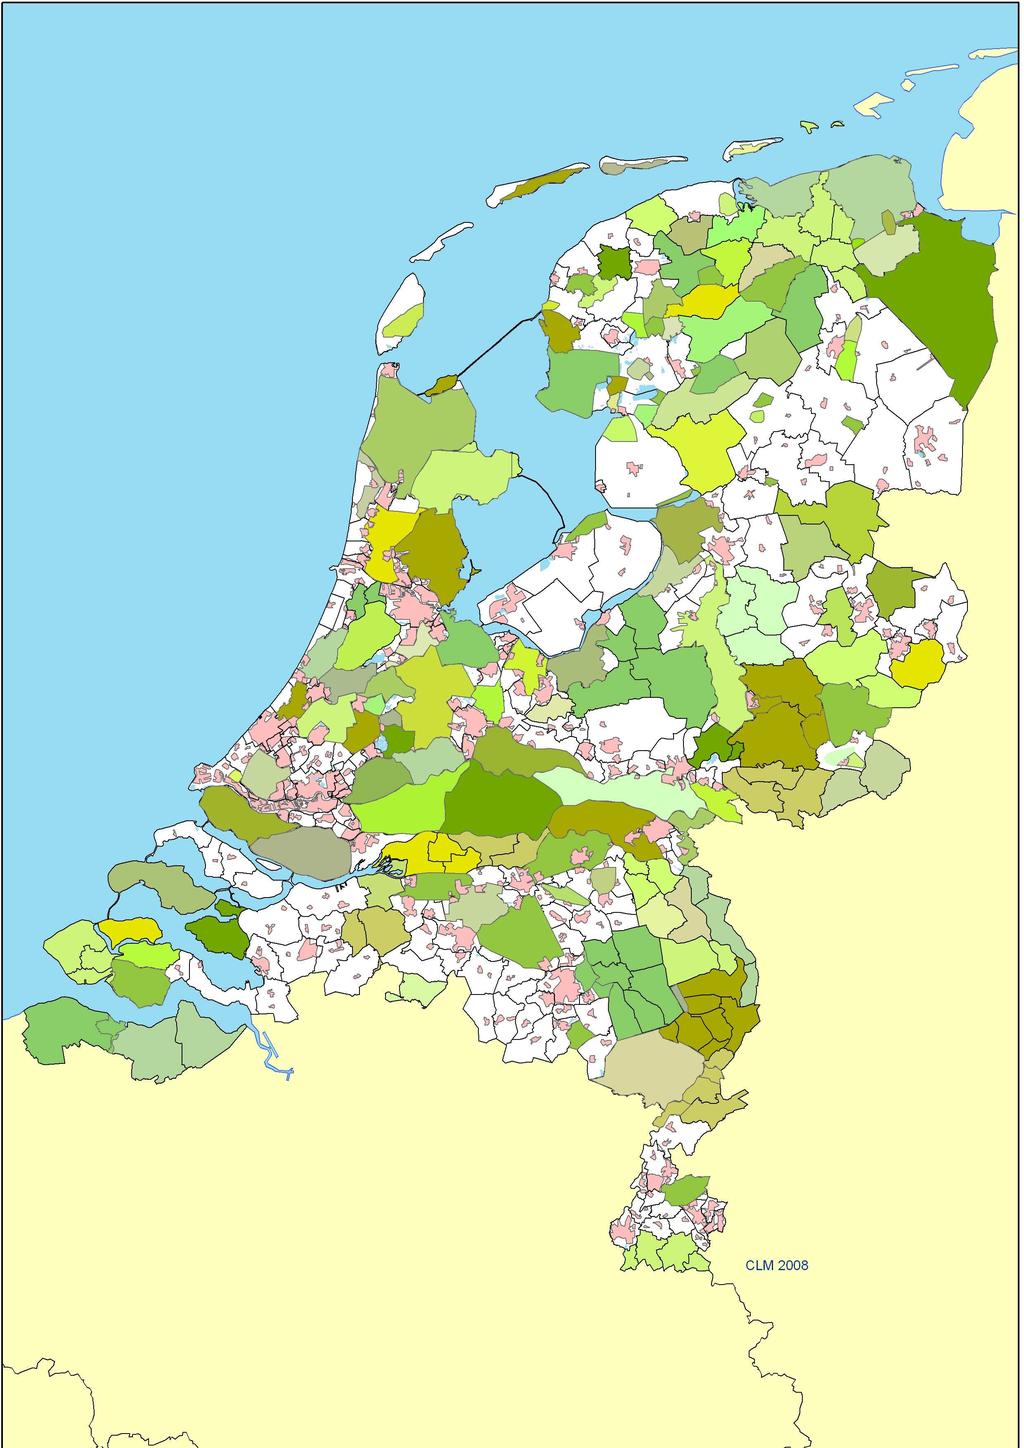 Figuur 7.2: Ligging van de werkgebieden van agrarische natuurverenigingen (data CLM 2008). De ligging van de werkgebieden is ingetekend volgens kaartmateriaal van NP-West en opgaven van ANVs.